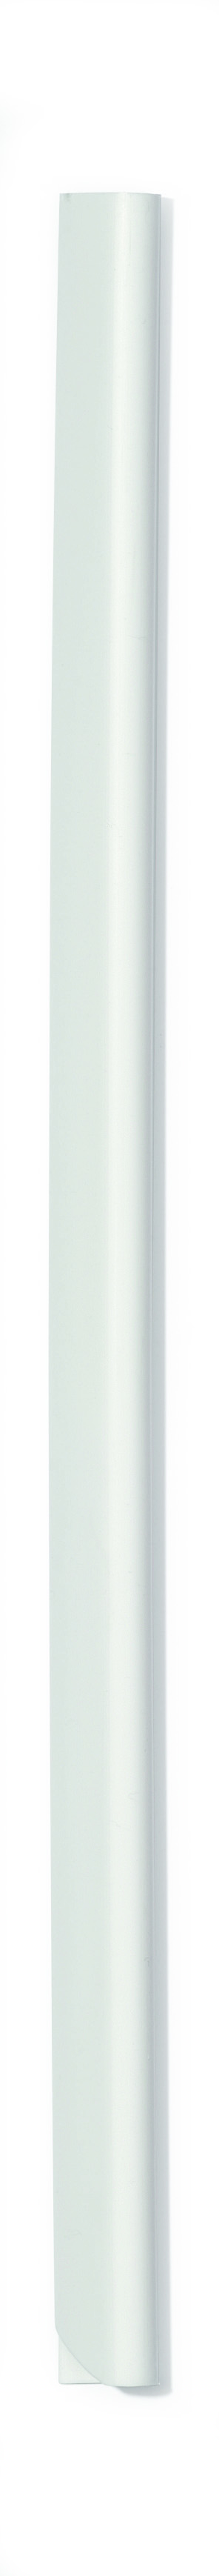 Spine Bar A4 6mm WT (PK100)